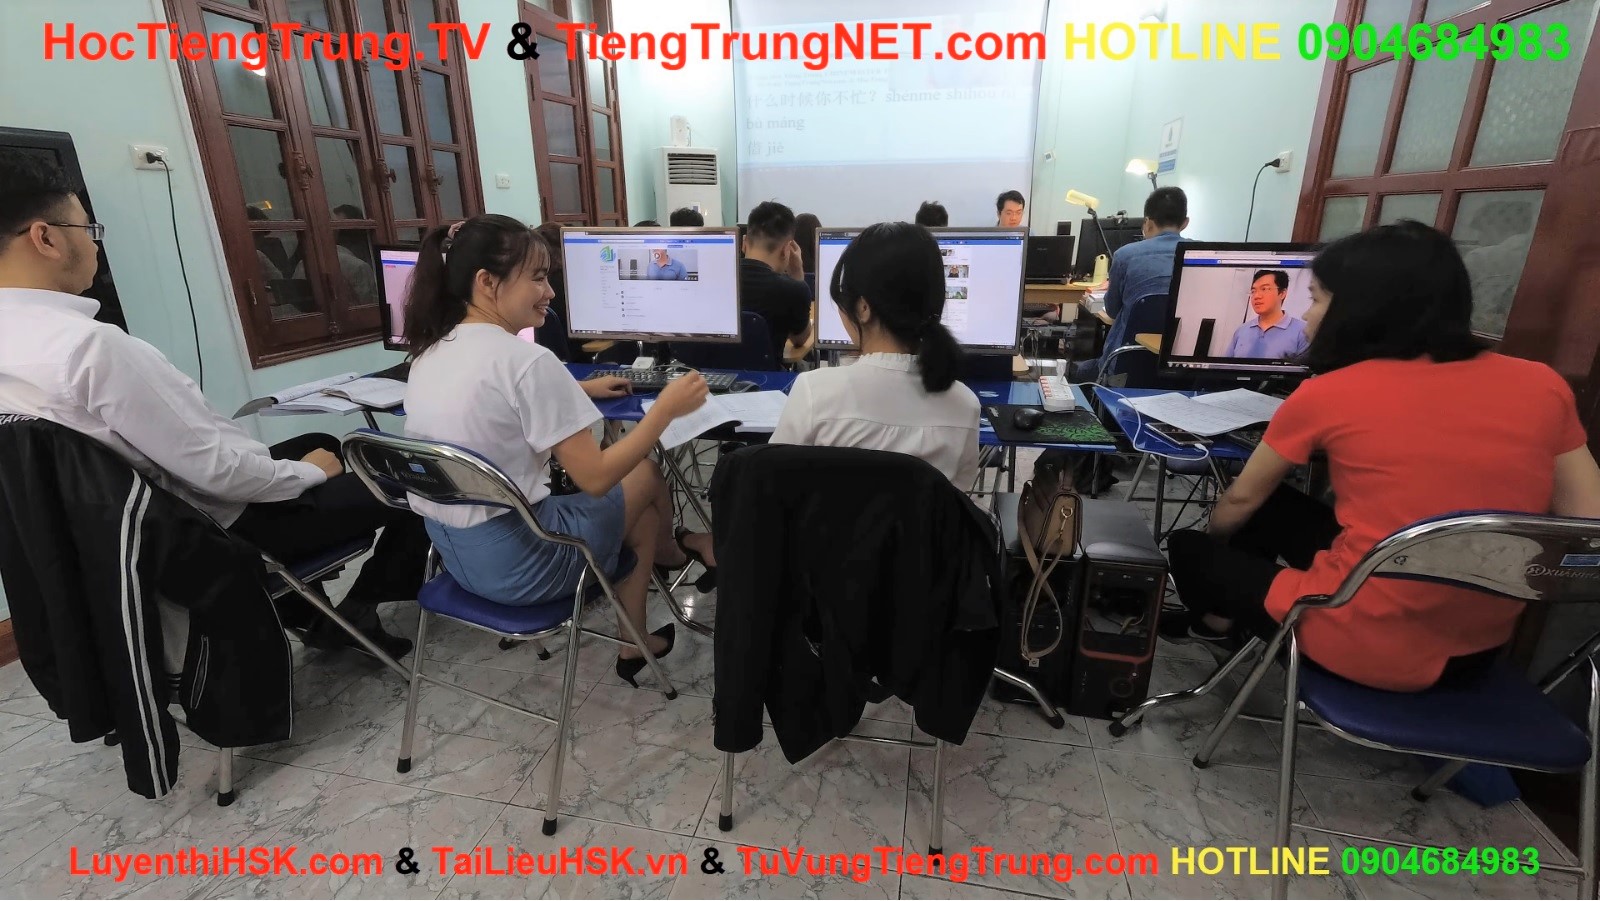 Trung tâm ChineMaster - Trung tâm dạy tiếng anh cấp tốc tại Hà Nội